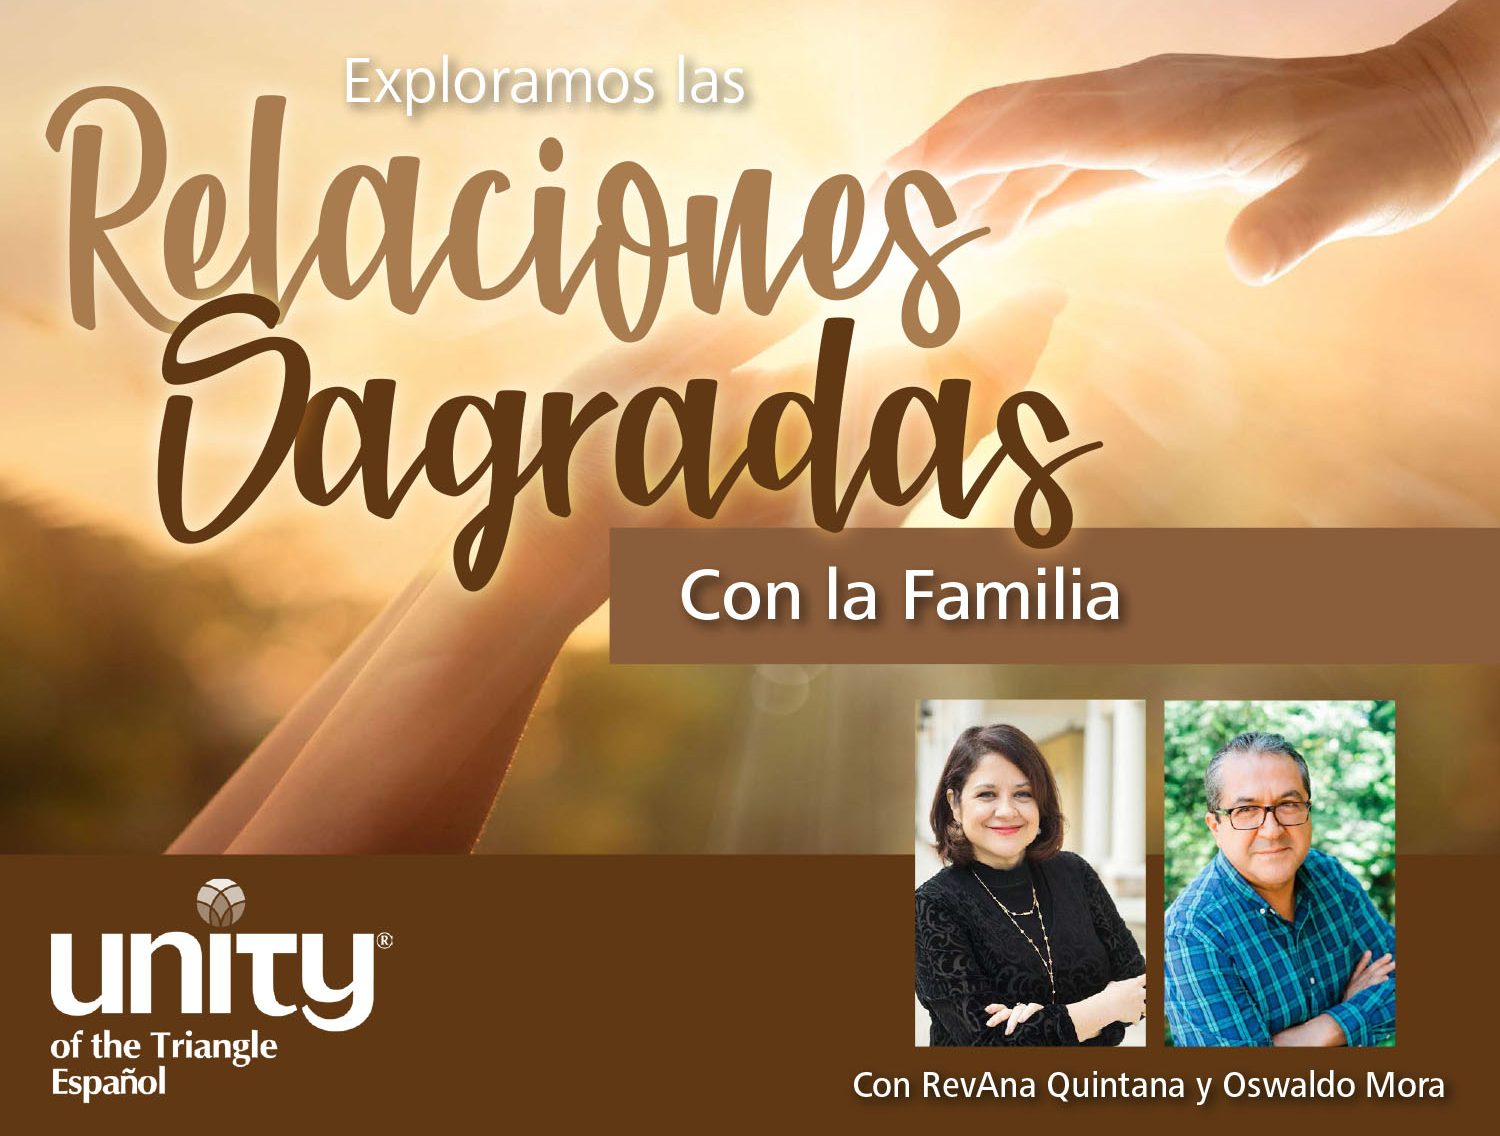 Exploramos las Relaciones Sagradas – Con la Familia